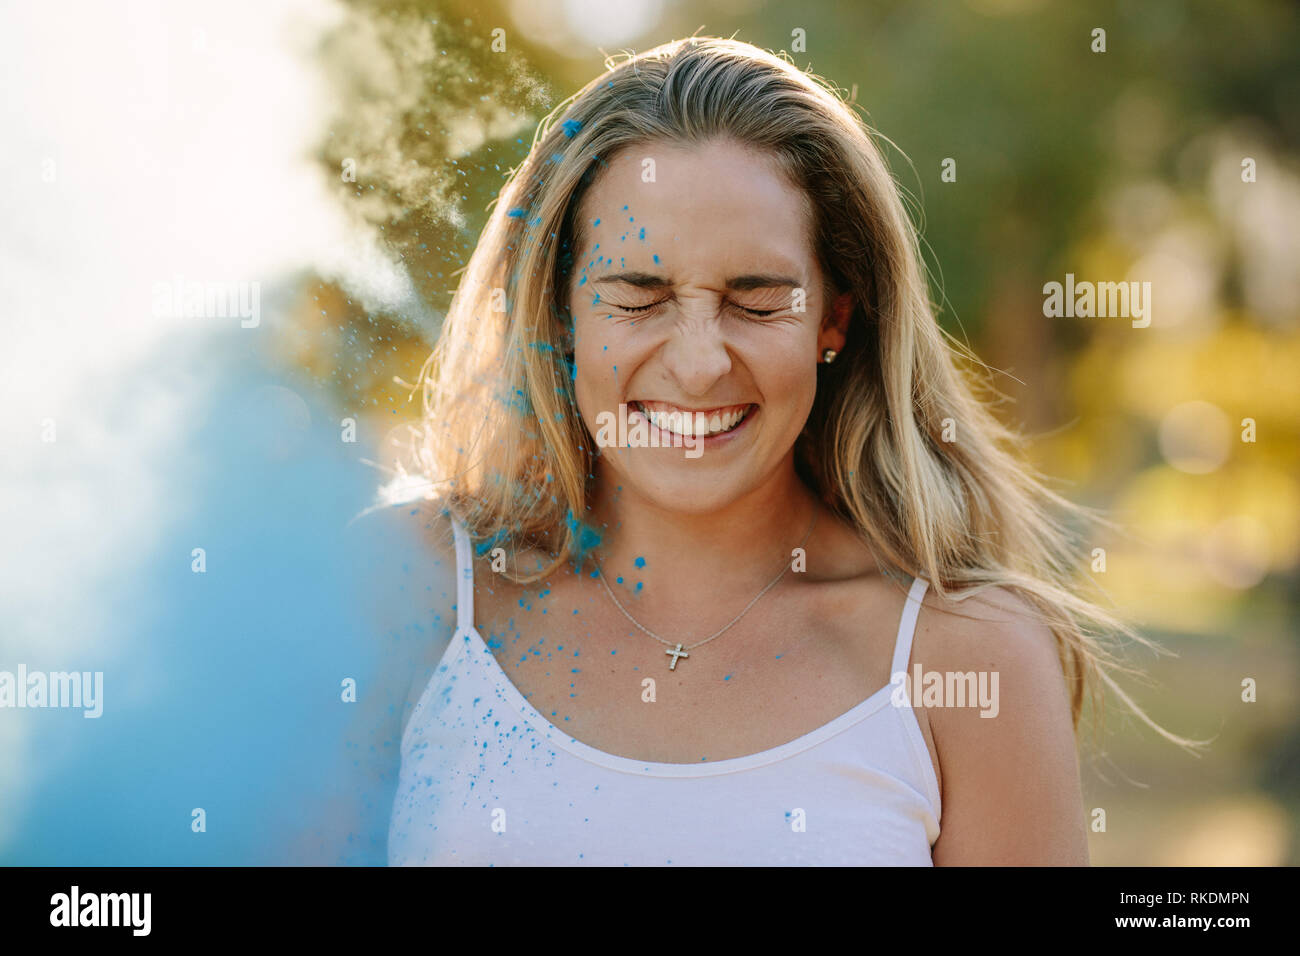 Lächelnde Frau ihre Augen schließen während der Wiedergabe von Holi. Holi Farbe Puder auf eine lächelnde Frau geworfen. Stockfoto